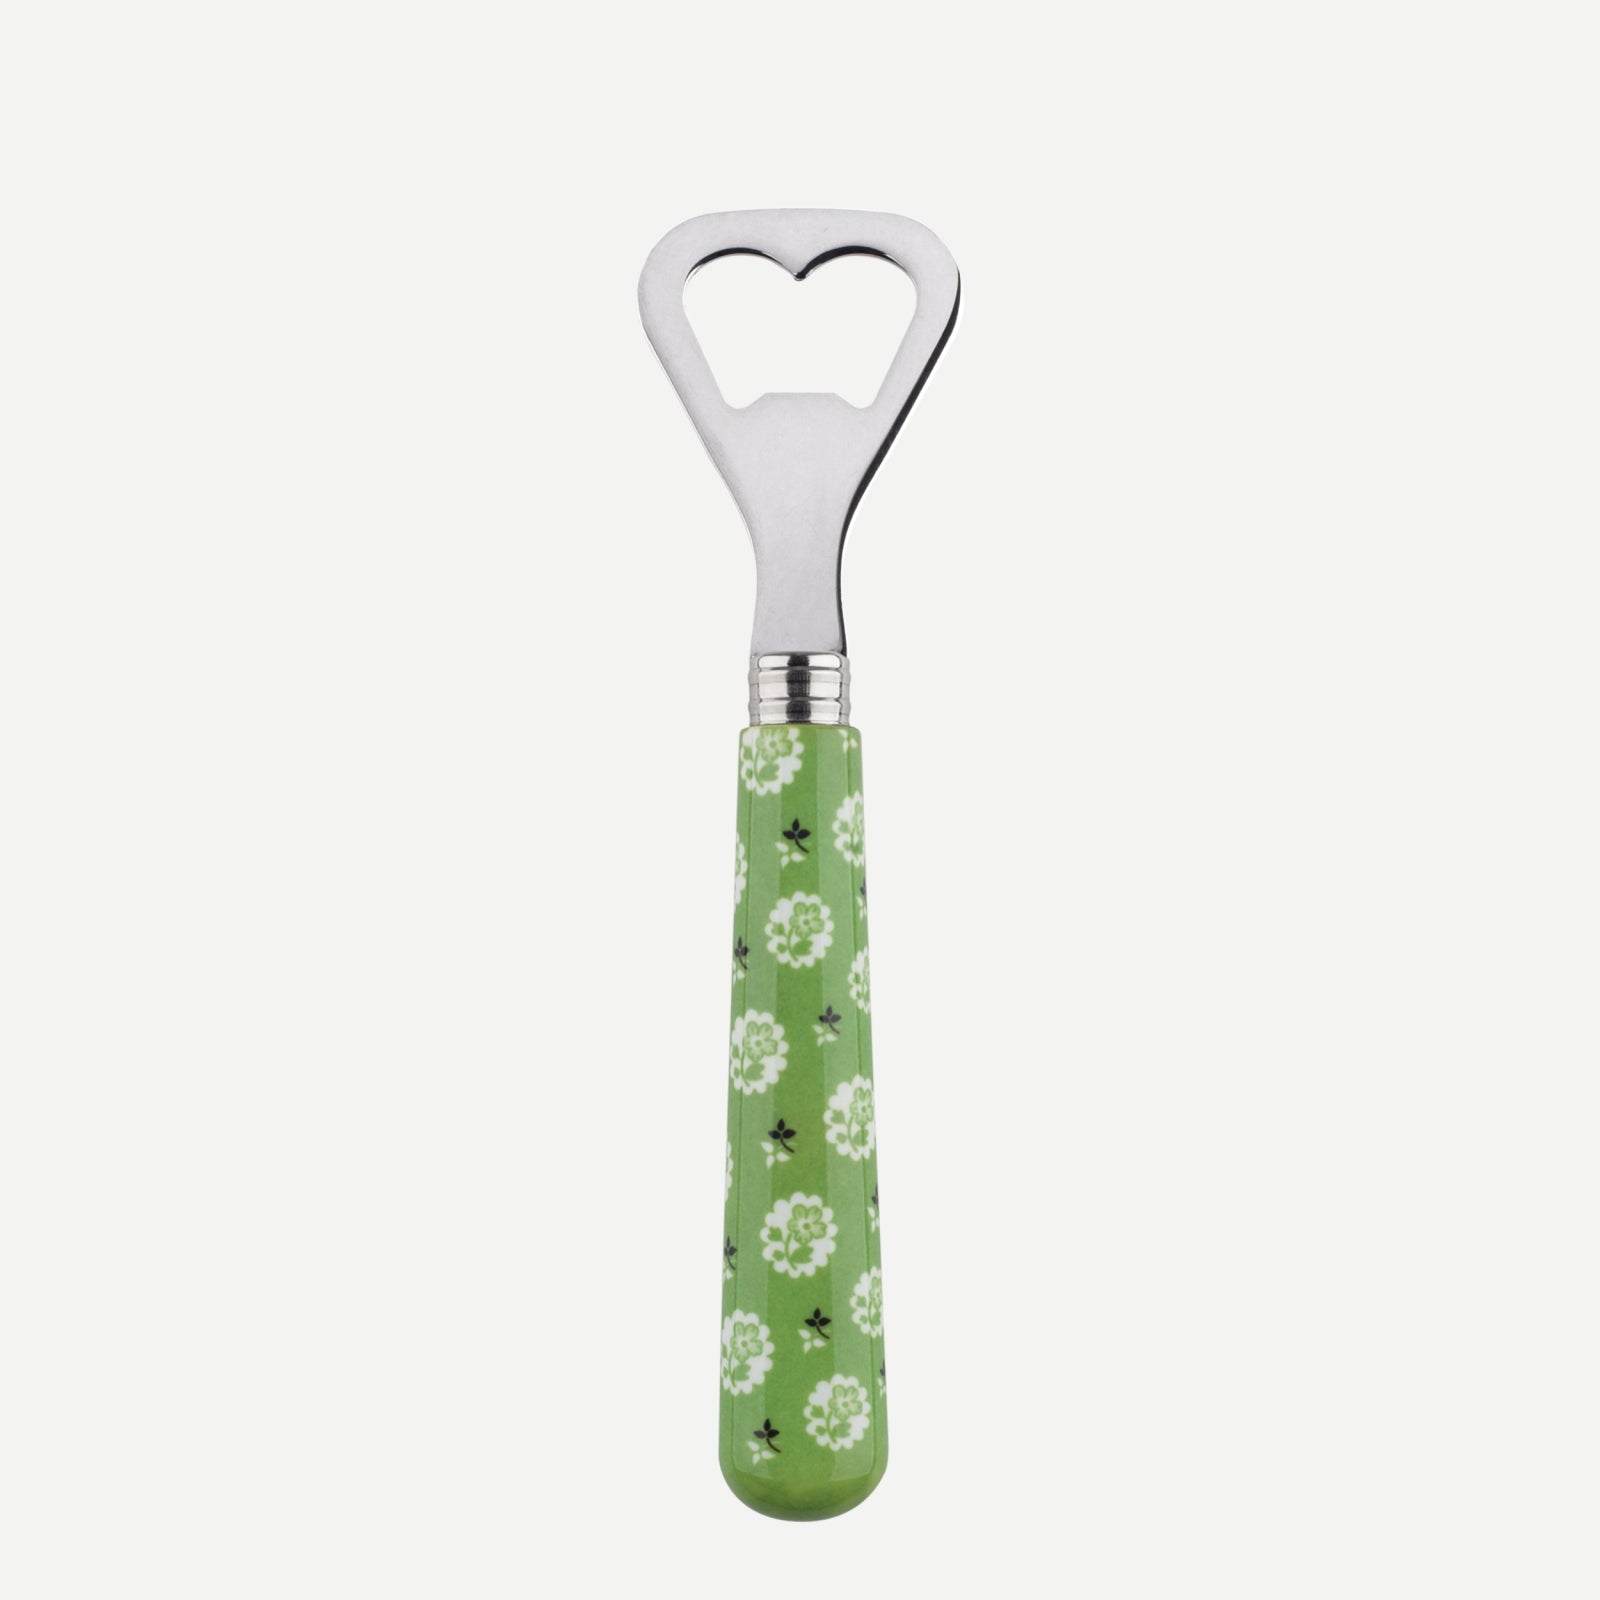 Bottle opener - Provencal - Garden green